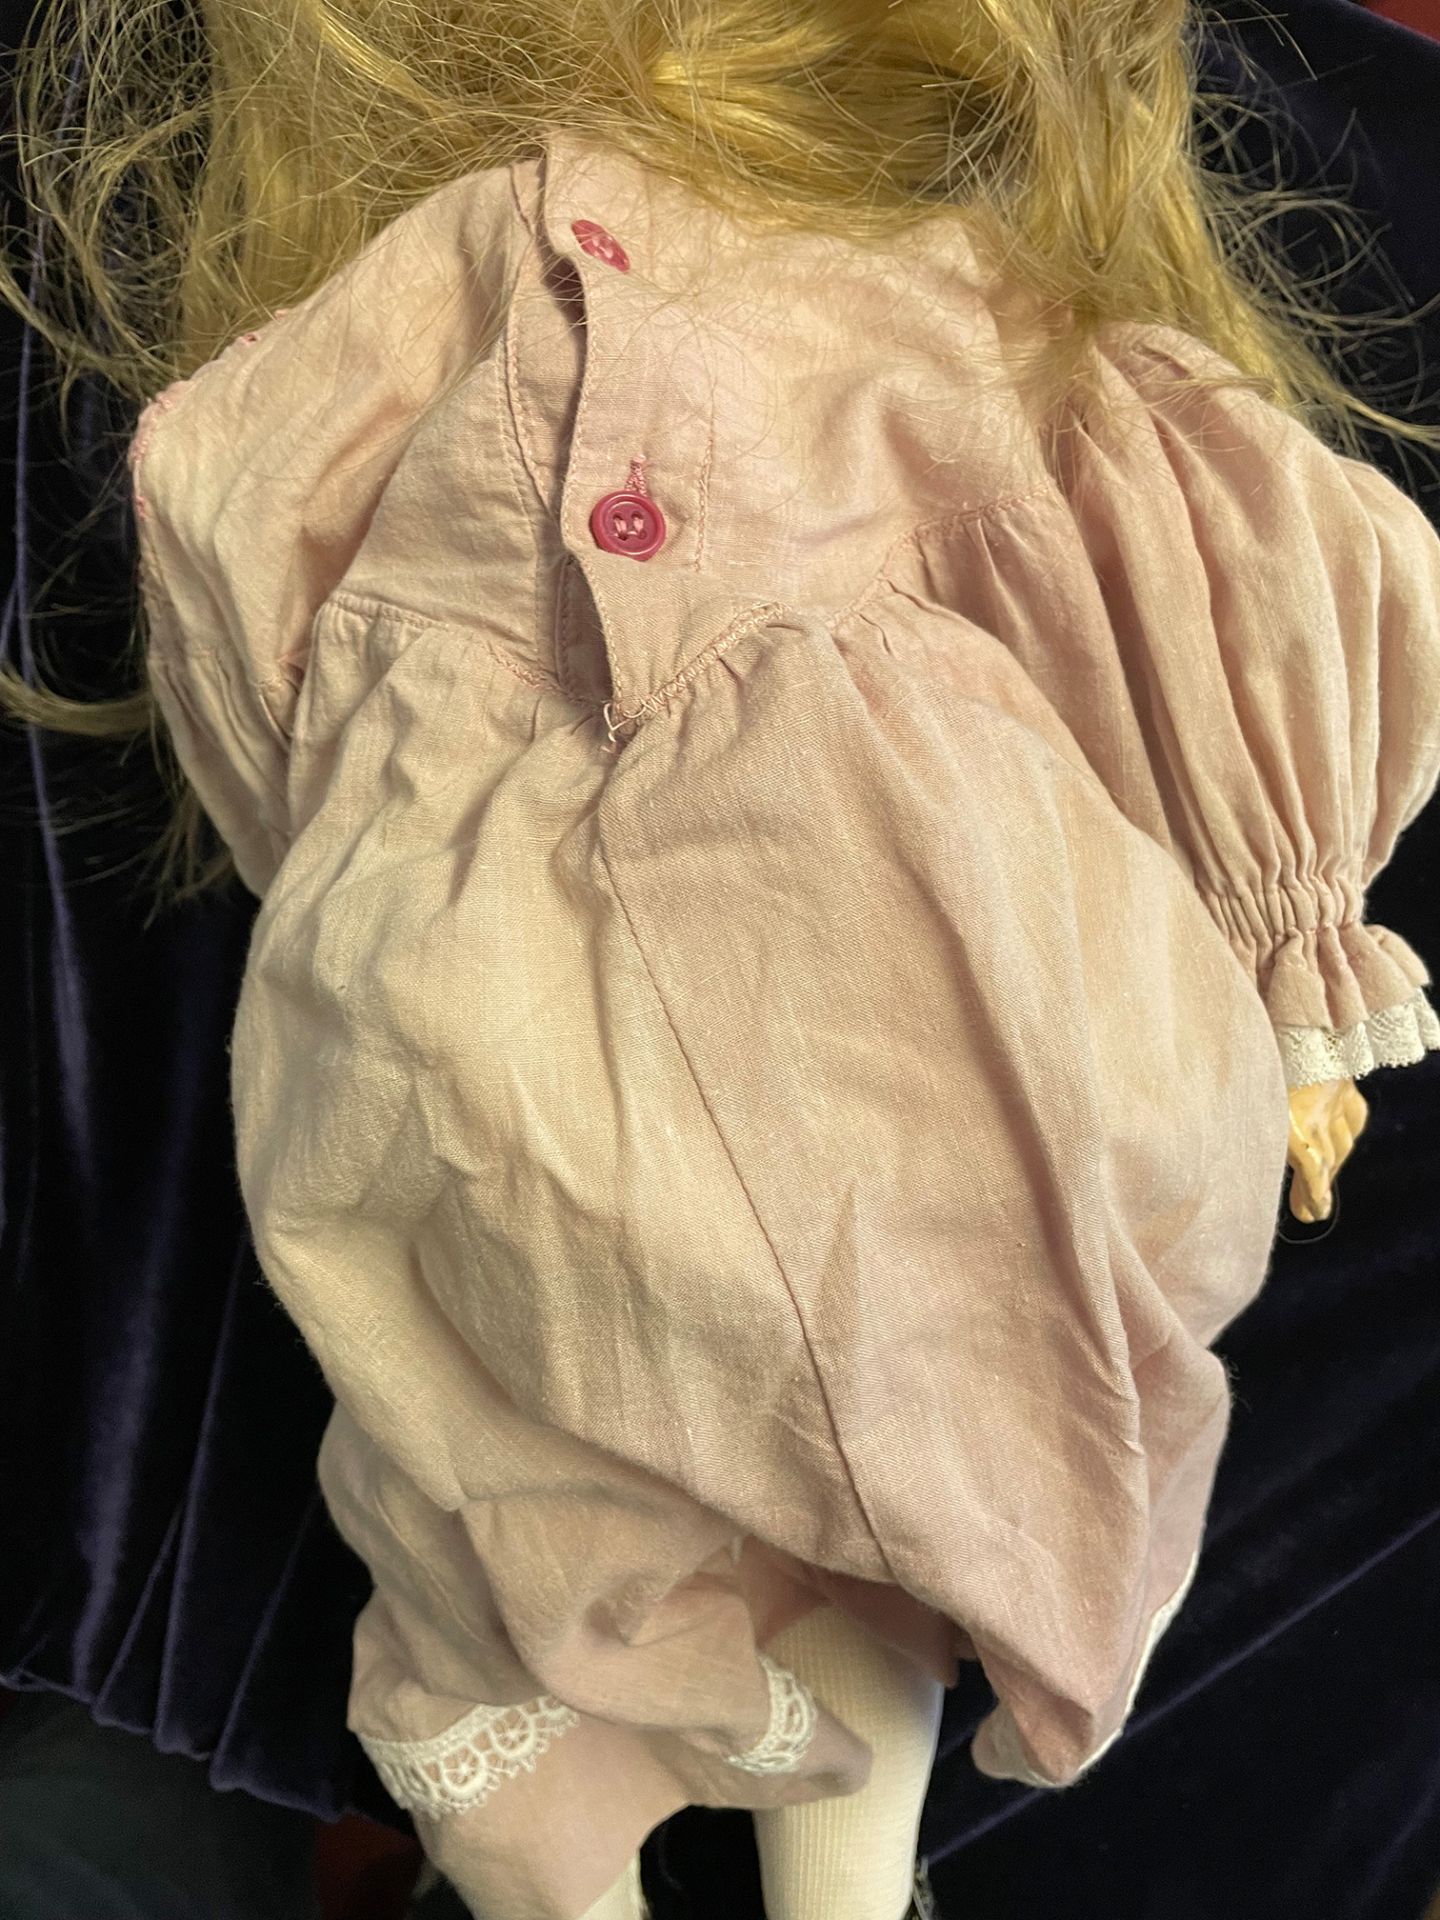 Großes blondes Puppenmädchen, gemarkt "Simon & Halbig K R". Kämmer & Reinhardt. Biskuitporzellan, - Bild 5 aus 8